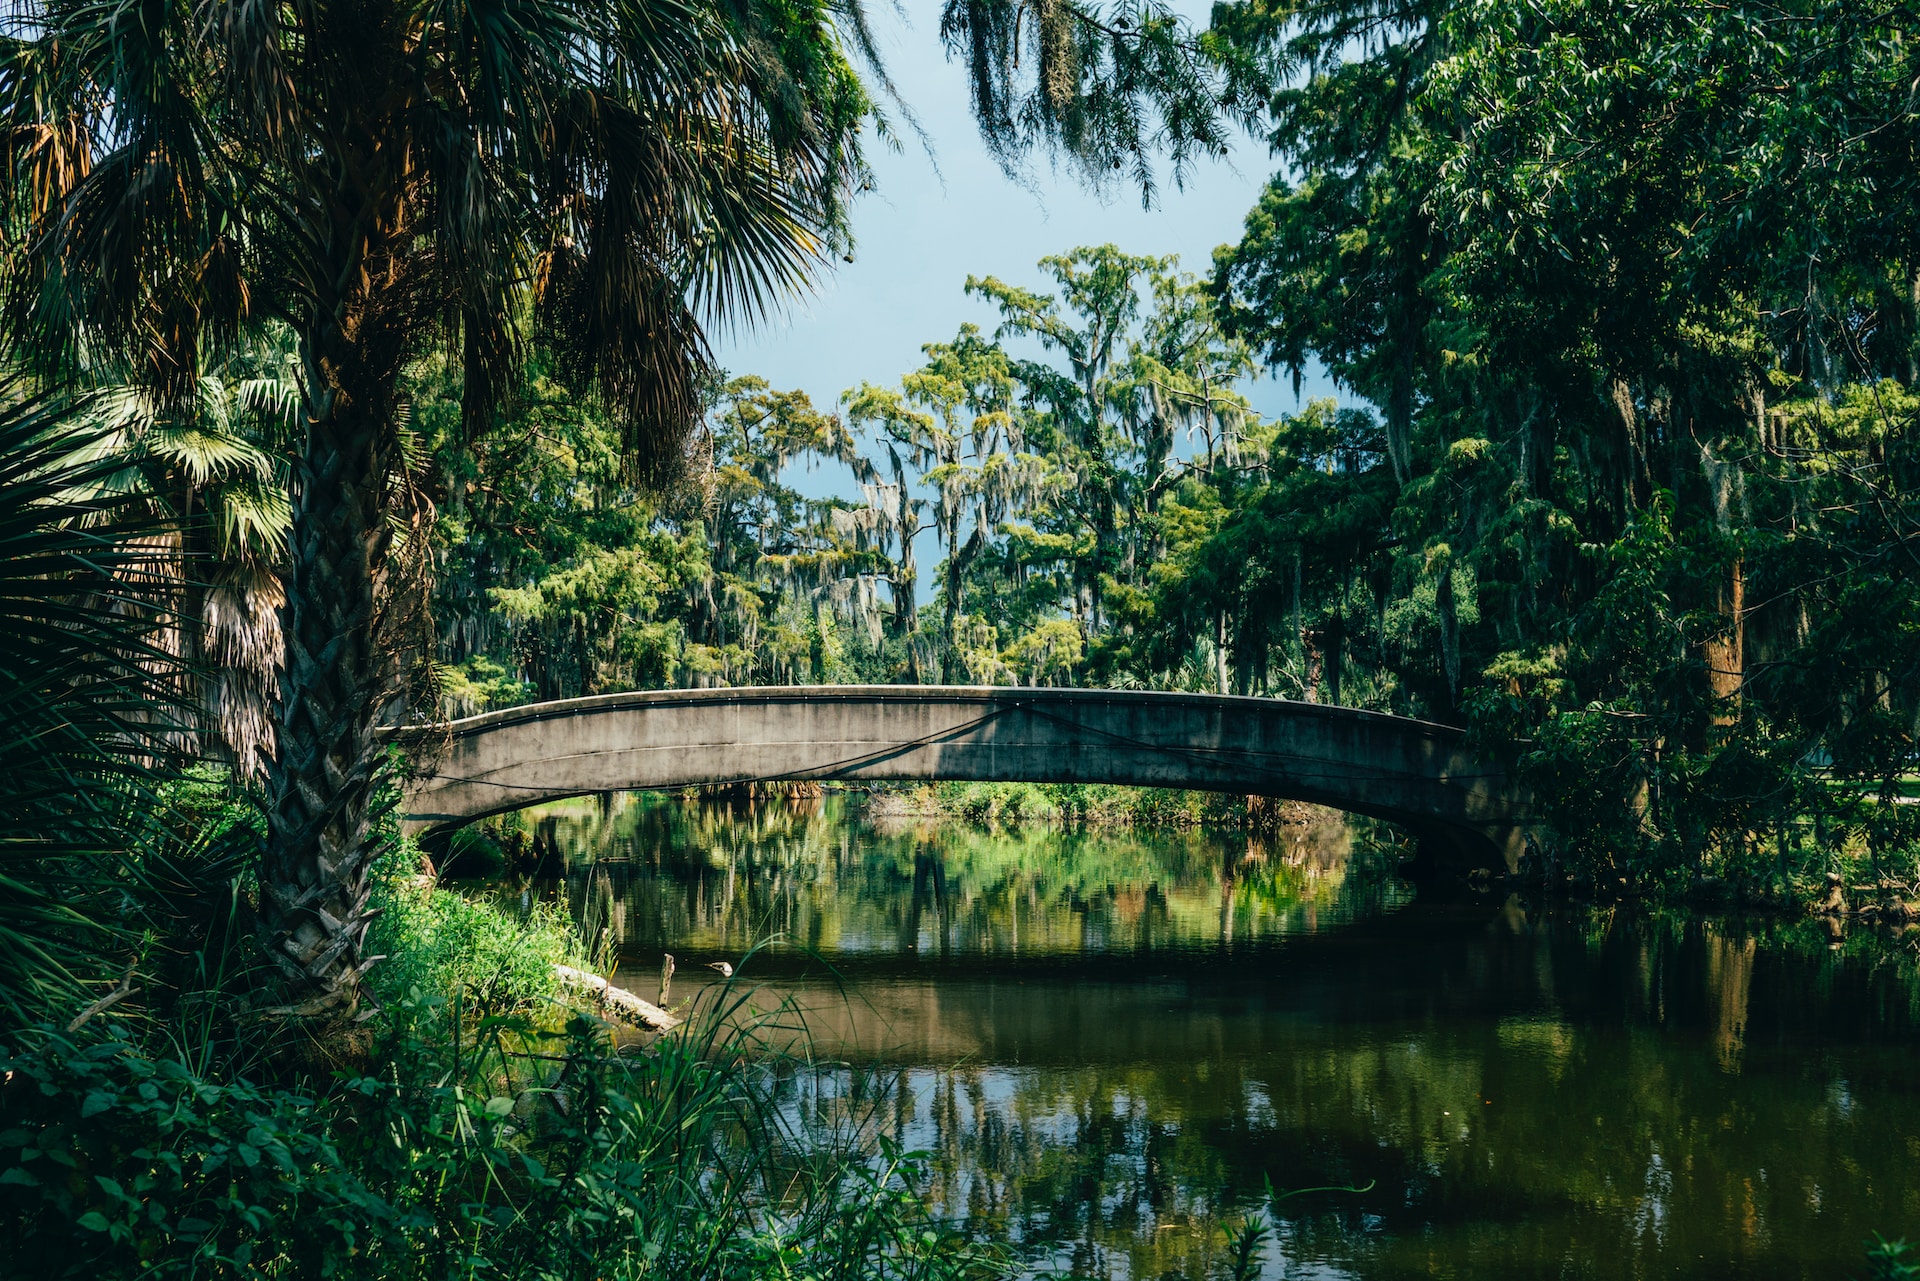 Tropical bridge in Louisiana.